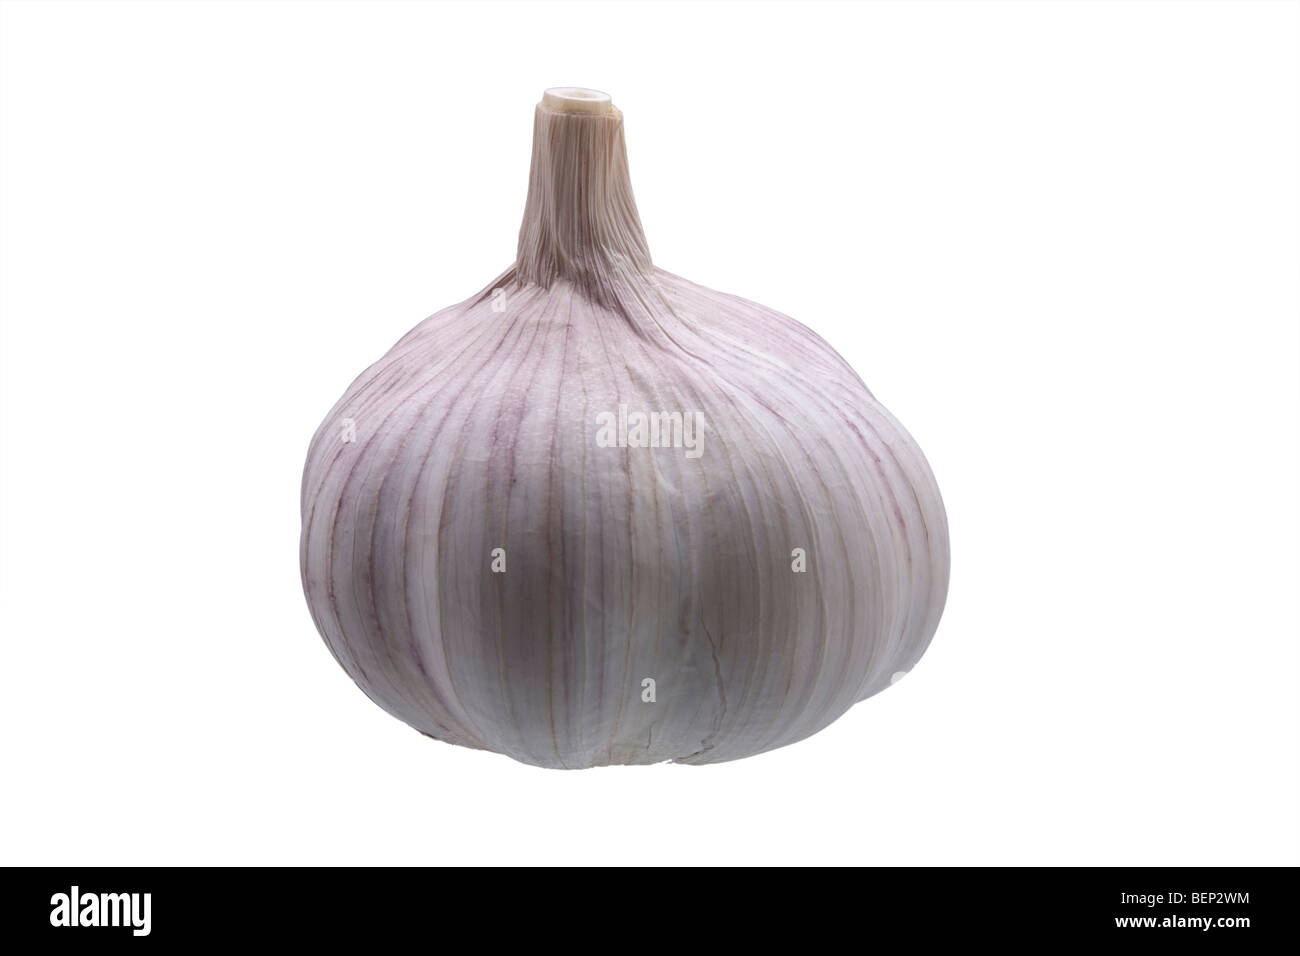 Fresh Garlic bulb isolated against white background Stock Photo